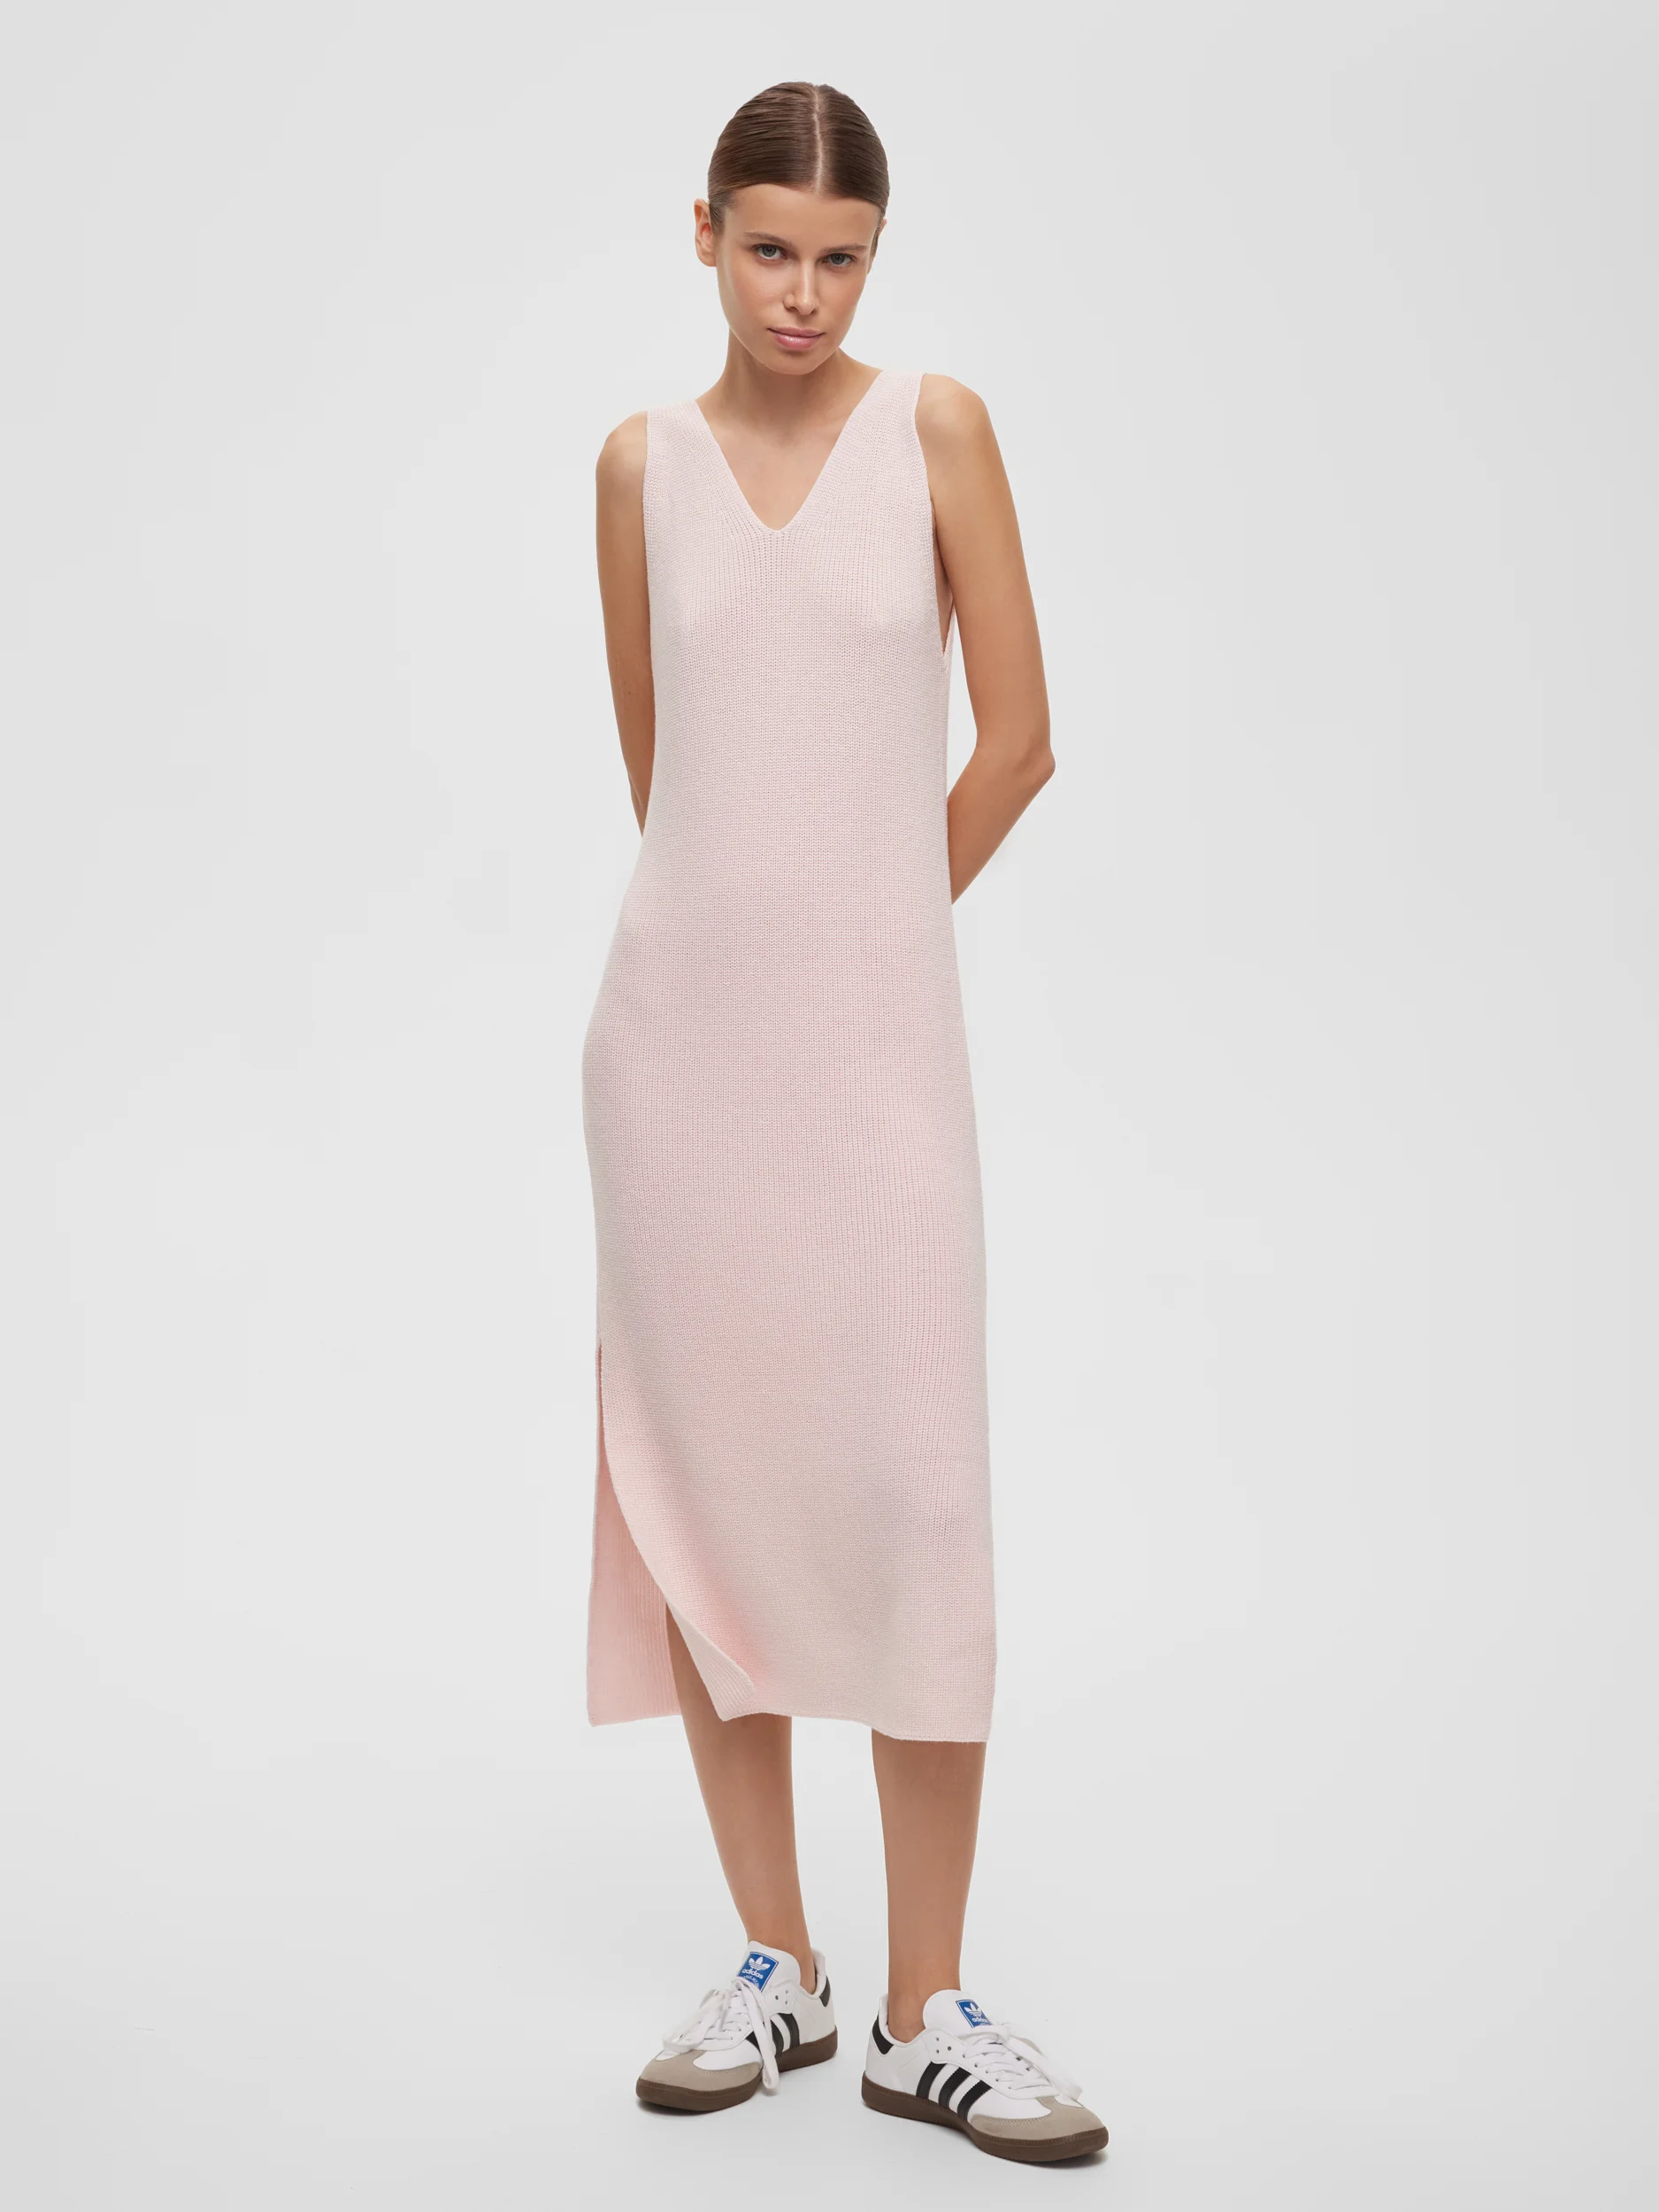 Вязаное облегающее платье миди из хлопка, цвет – розовый платье свободного кроя вязаное цвет – белый